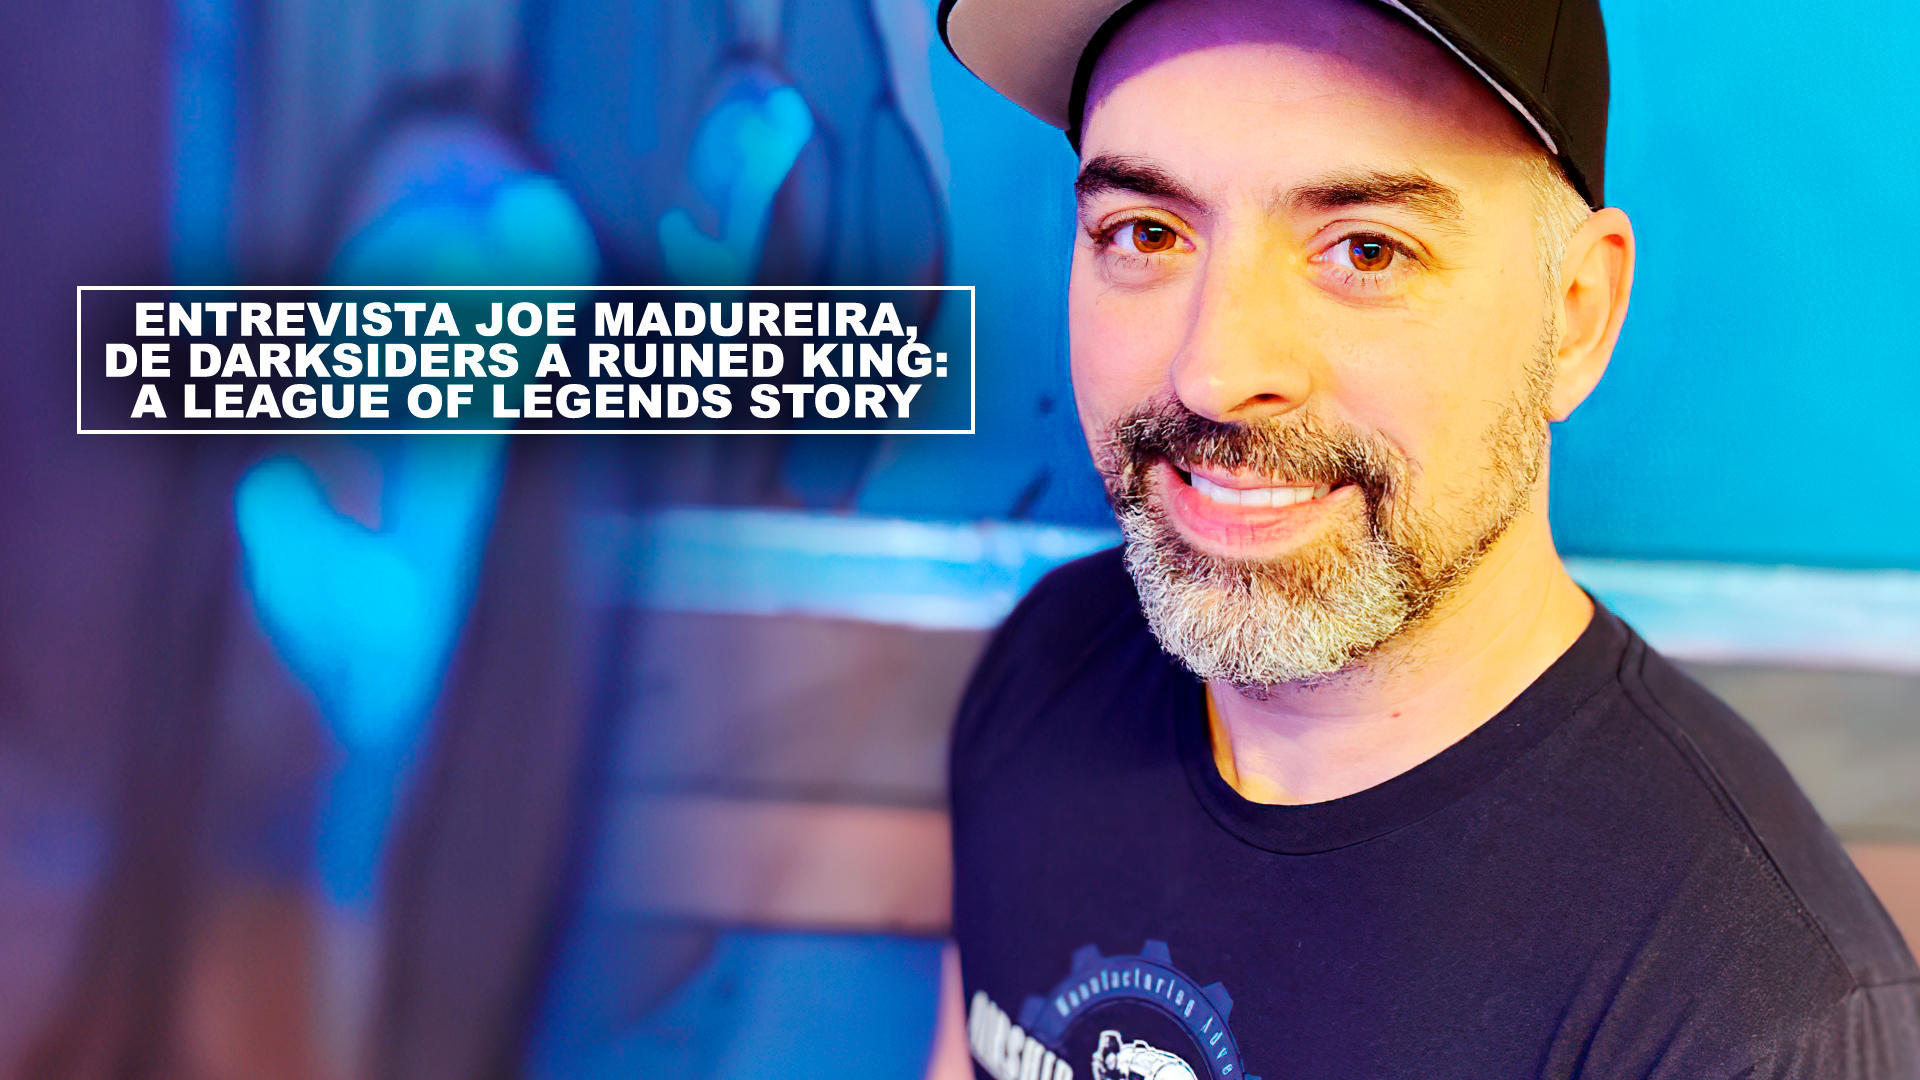 Entrevista Joe Madureira, de Darksiders a Ruined King: A League of Legends Story